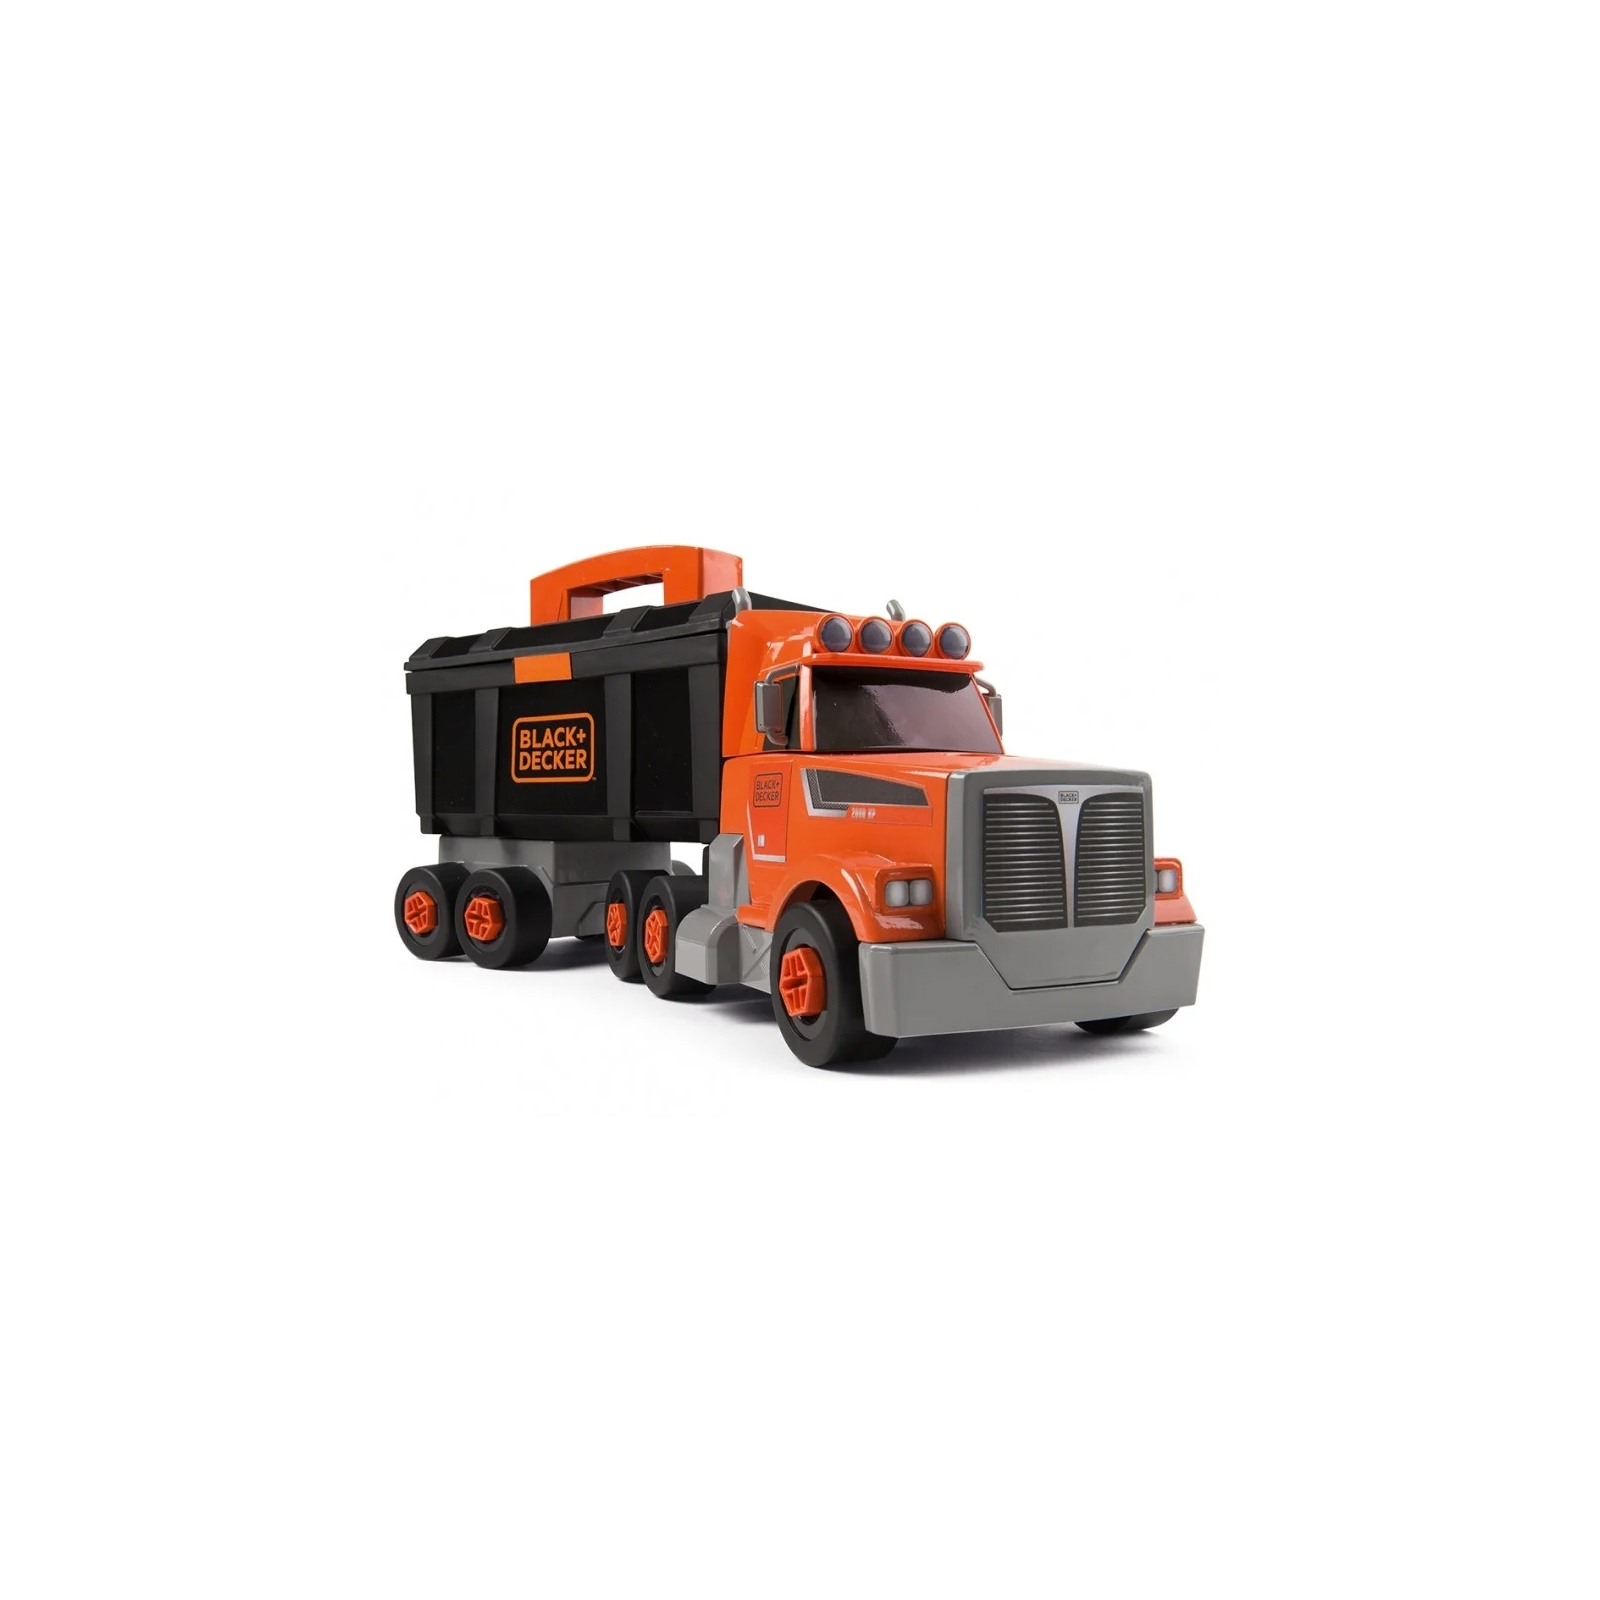 Ігровий набір Smoby Блек & Деккер. Вантажівка з інструм., кейсом, краном та акс (360175)